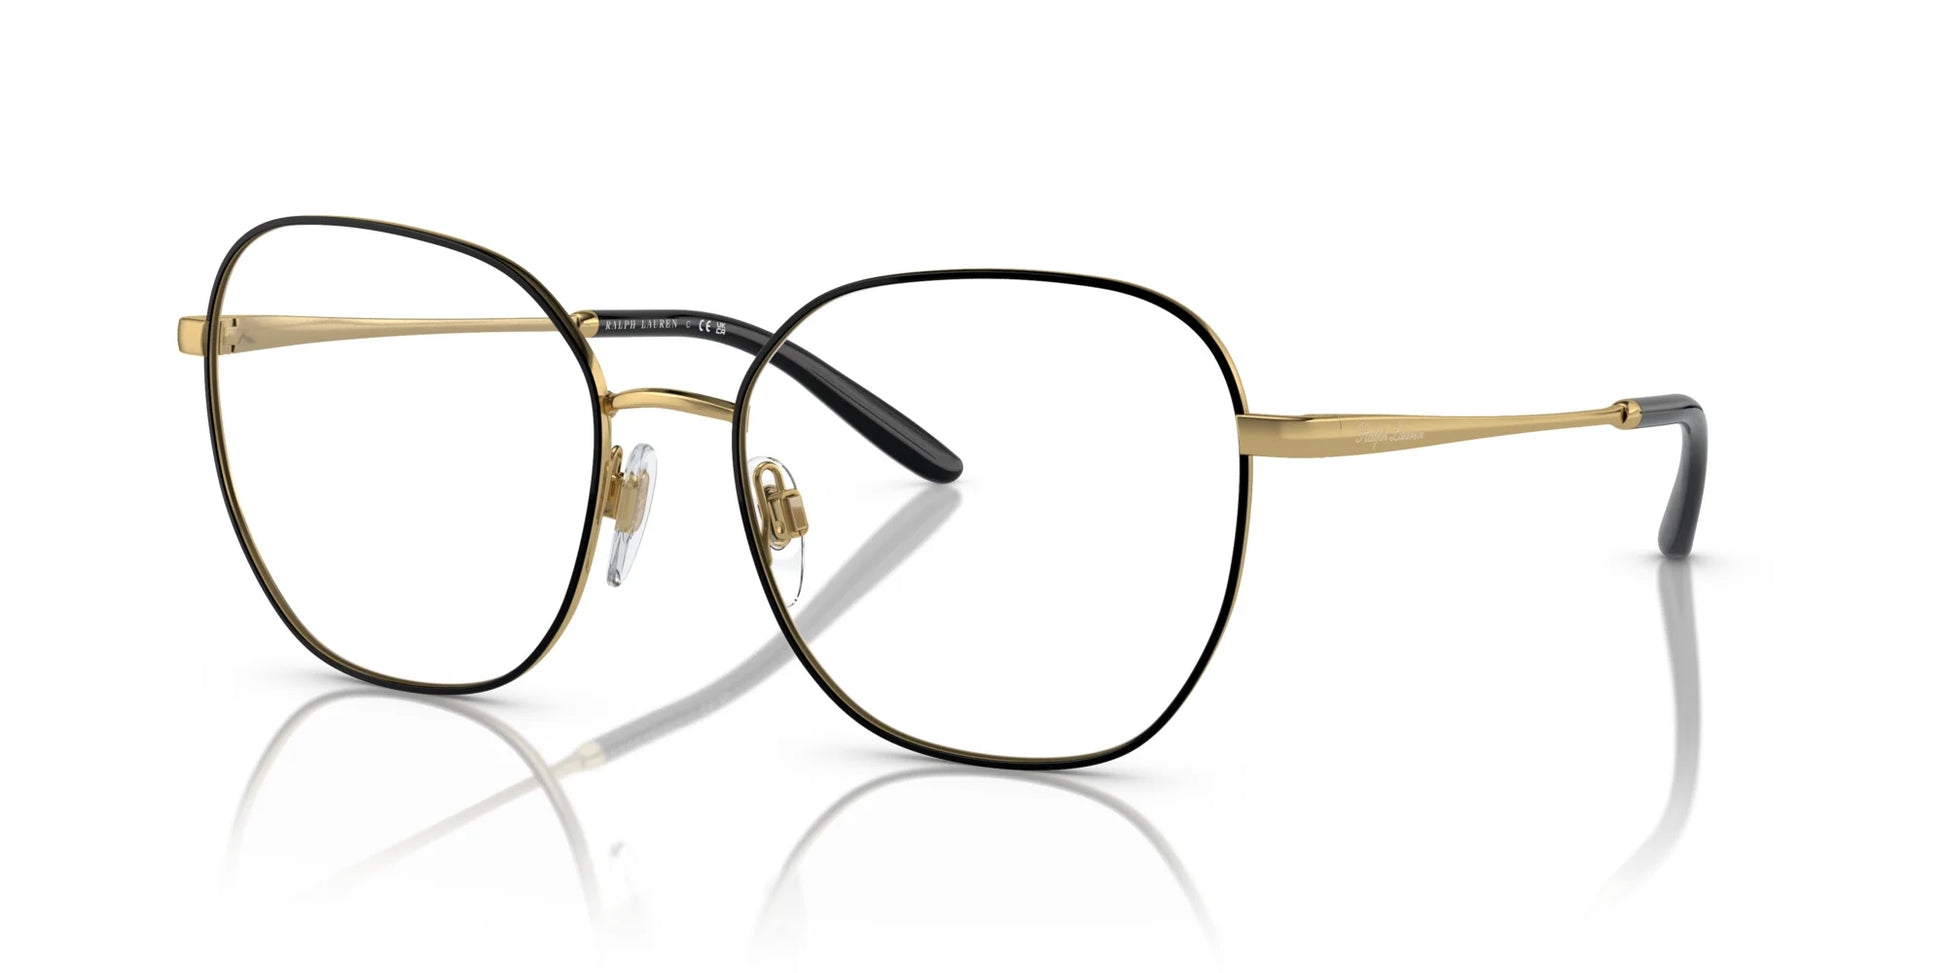 Ralph Lauren RL5120 Eyeglasses Black / Gold